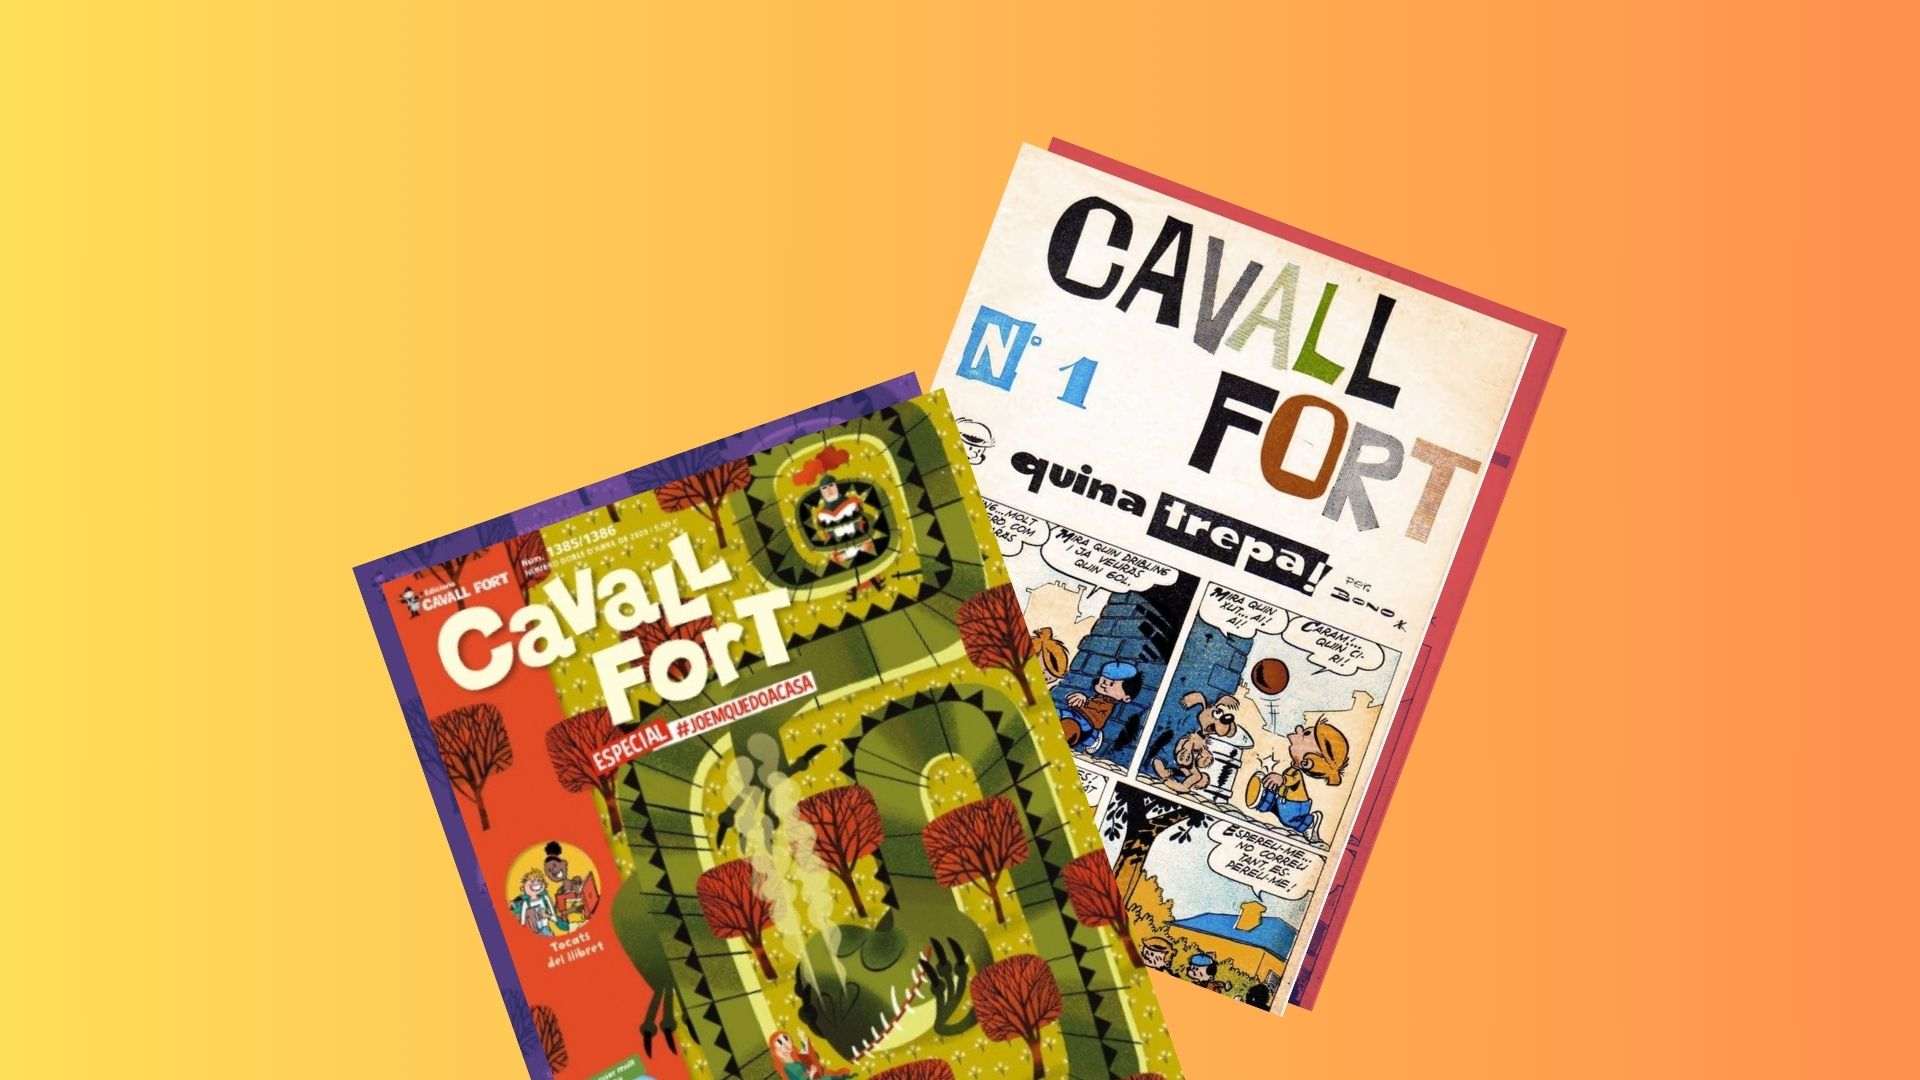 Cavall Fort rep el Premi de Comunicació Muriel Casals d’Òmnium Cultural